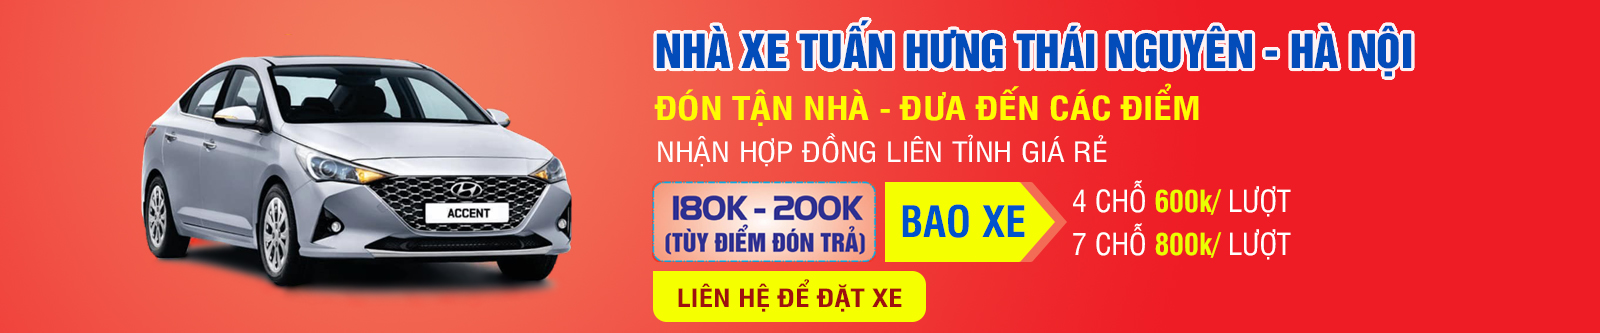 Xe ghép Tuấn Hưng tuyến Thái Nguyên - Hà Nội